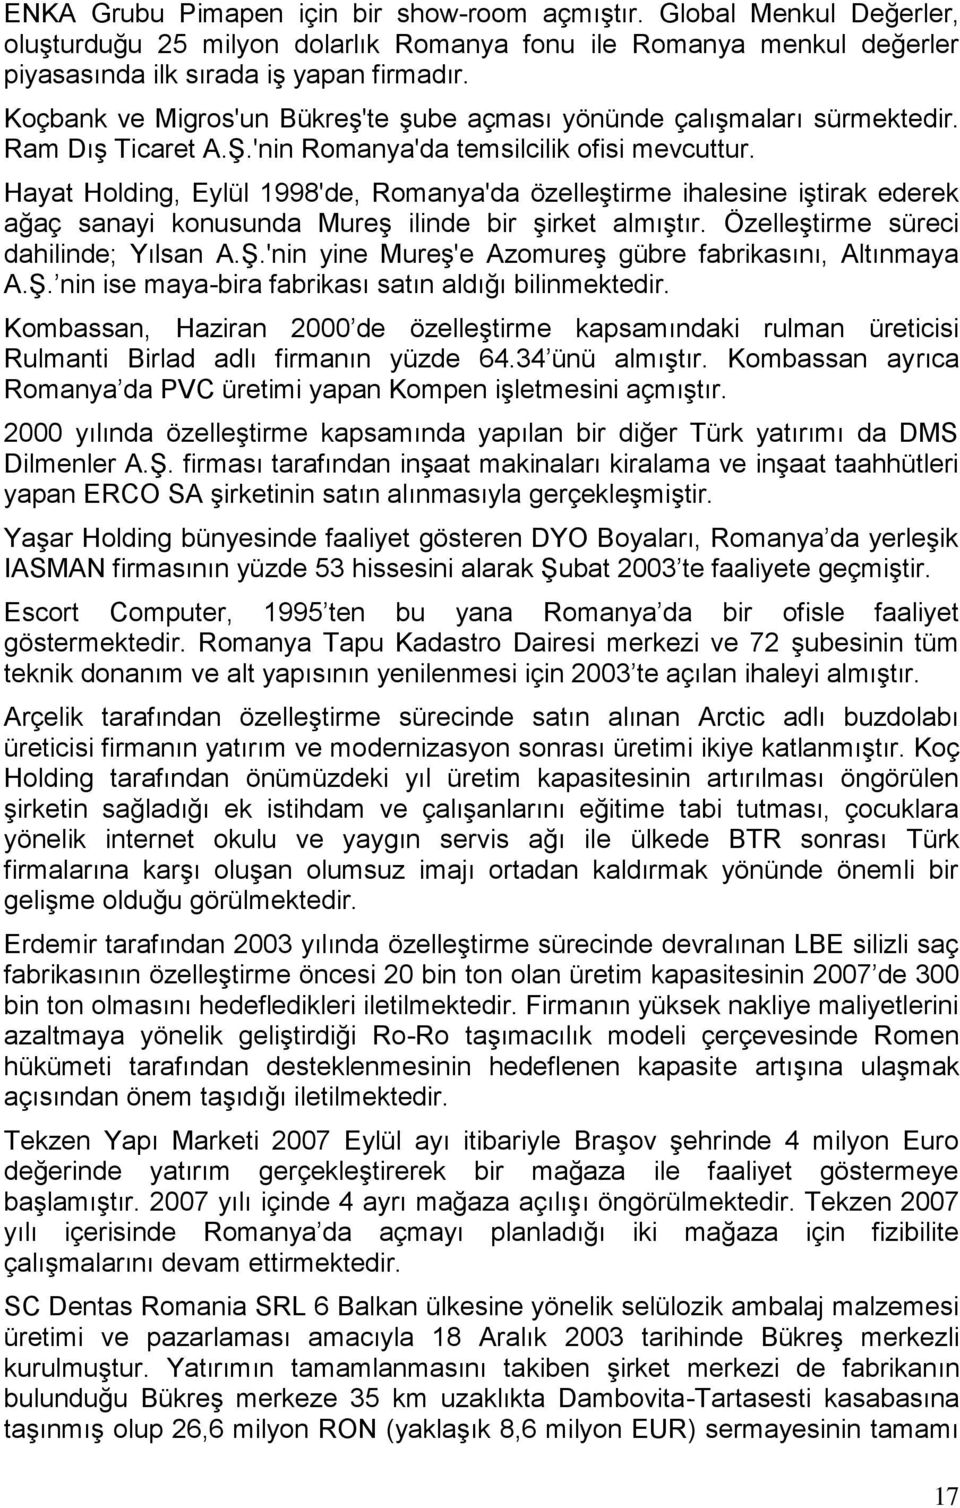 Hayat Holding, Eylül 1998'de, Romanya'da özelleģtirme ihalesine iģtirak ederek ağaç sanayi konusunda MureĢ ilinde bir Ģirket almıģtır. ÖzelleĢtirme süreci dahilinde; Yılsan A.ġ.